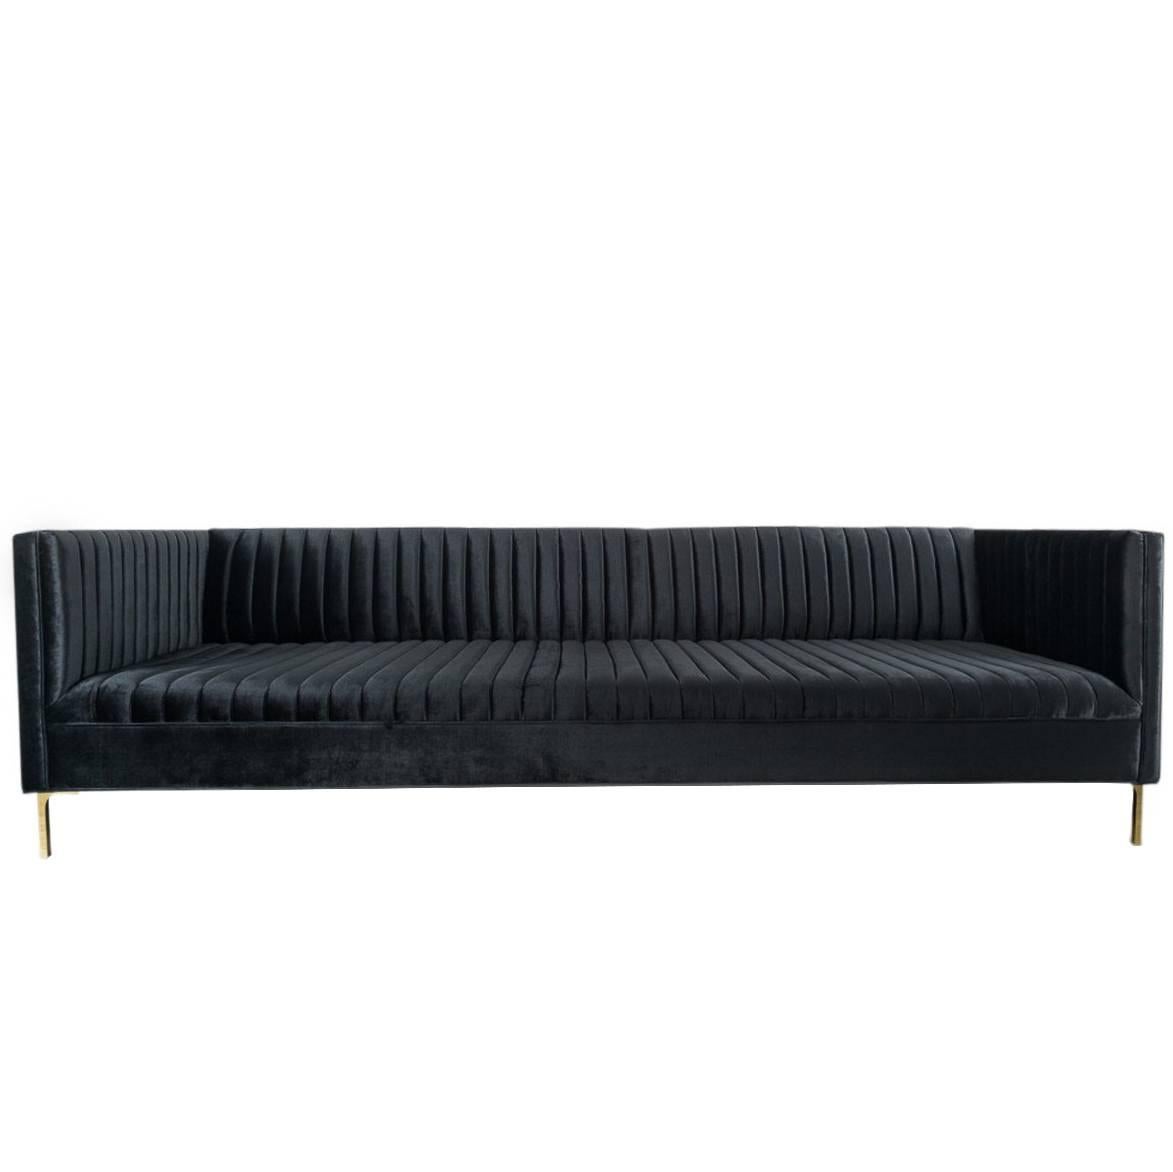 Modern Style Sofa in Long-Arm Tufted Black Velvet with Brass Legs